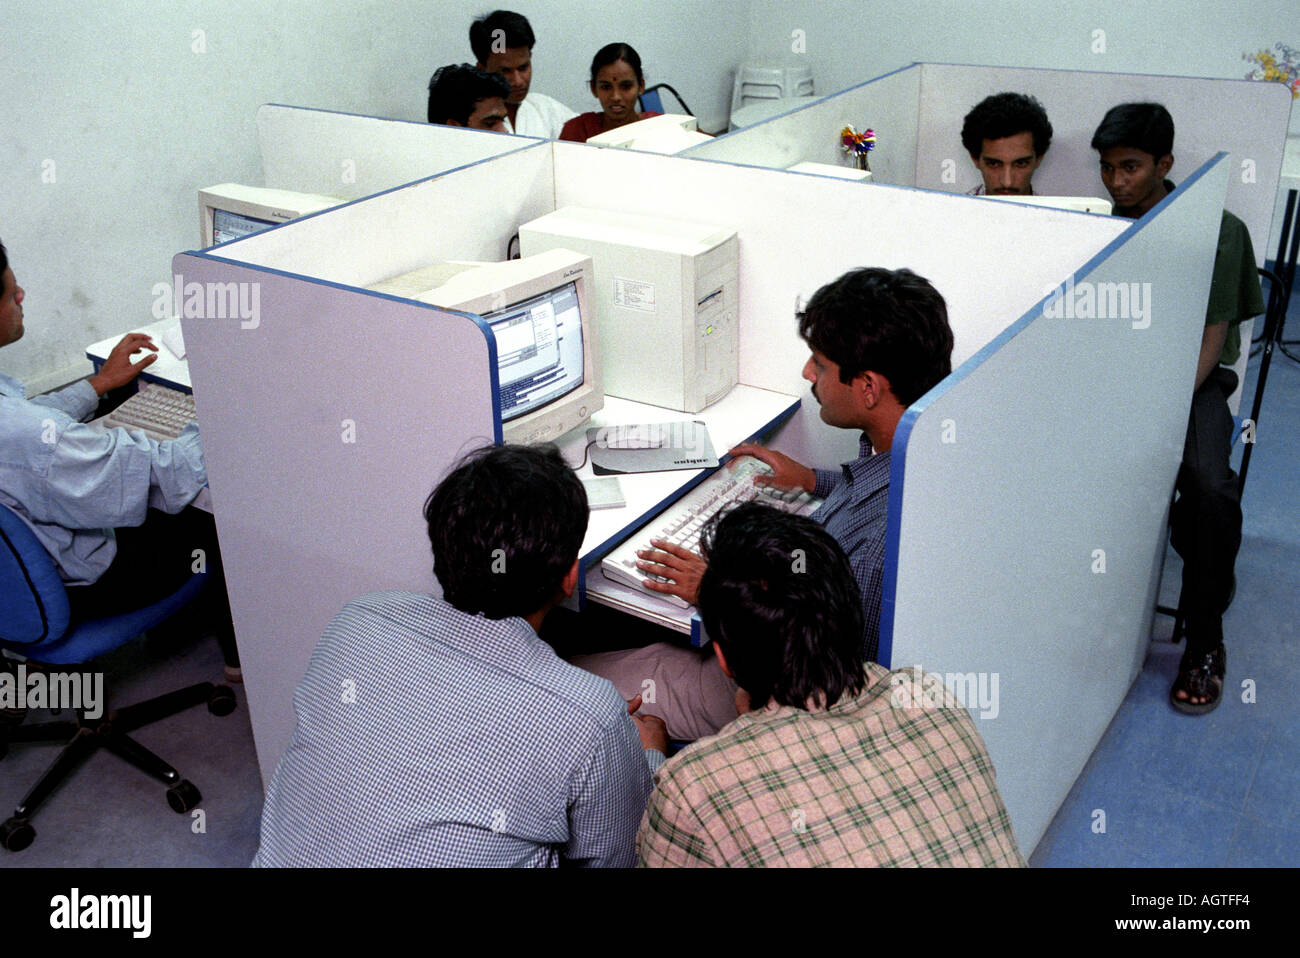 Les cybercafés sont en pleine explosion à Bangalore Inde souvent des familles entières foule autour de l'ordinateur à tour de stand en relation e-mail Banque D'Images